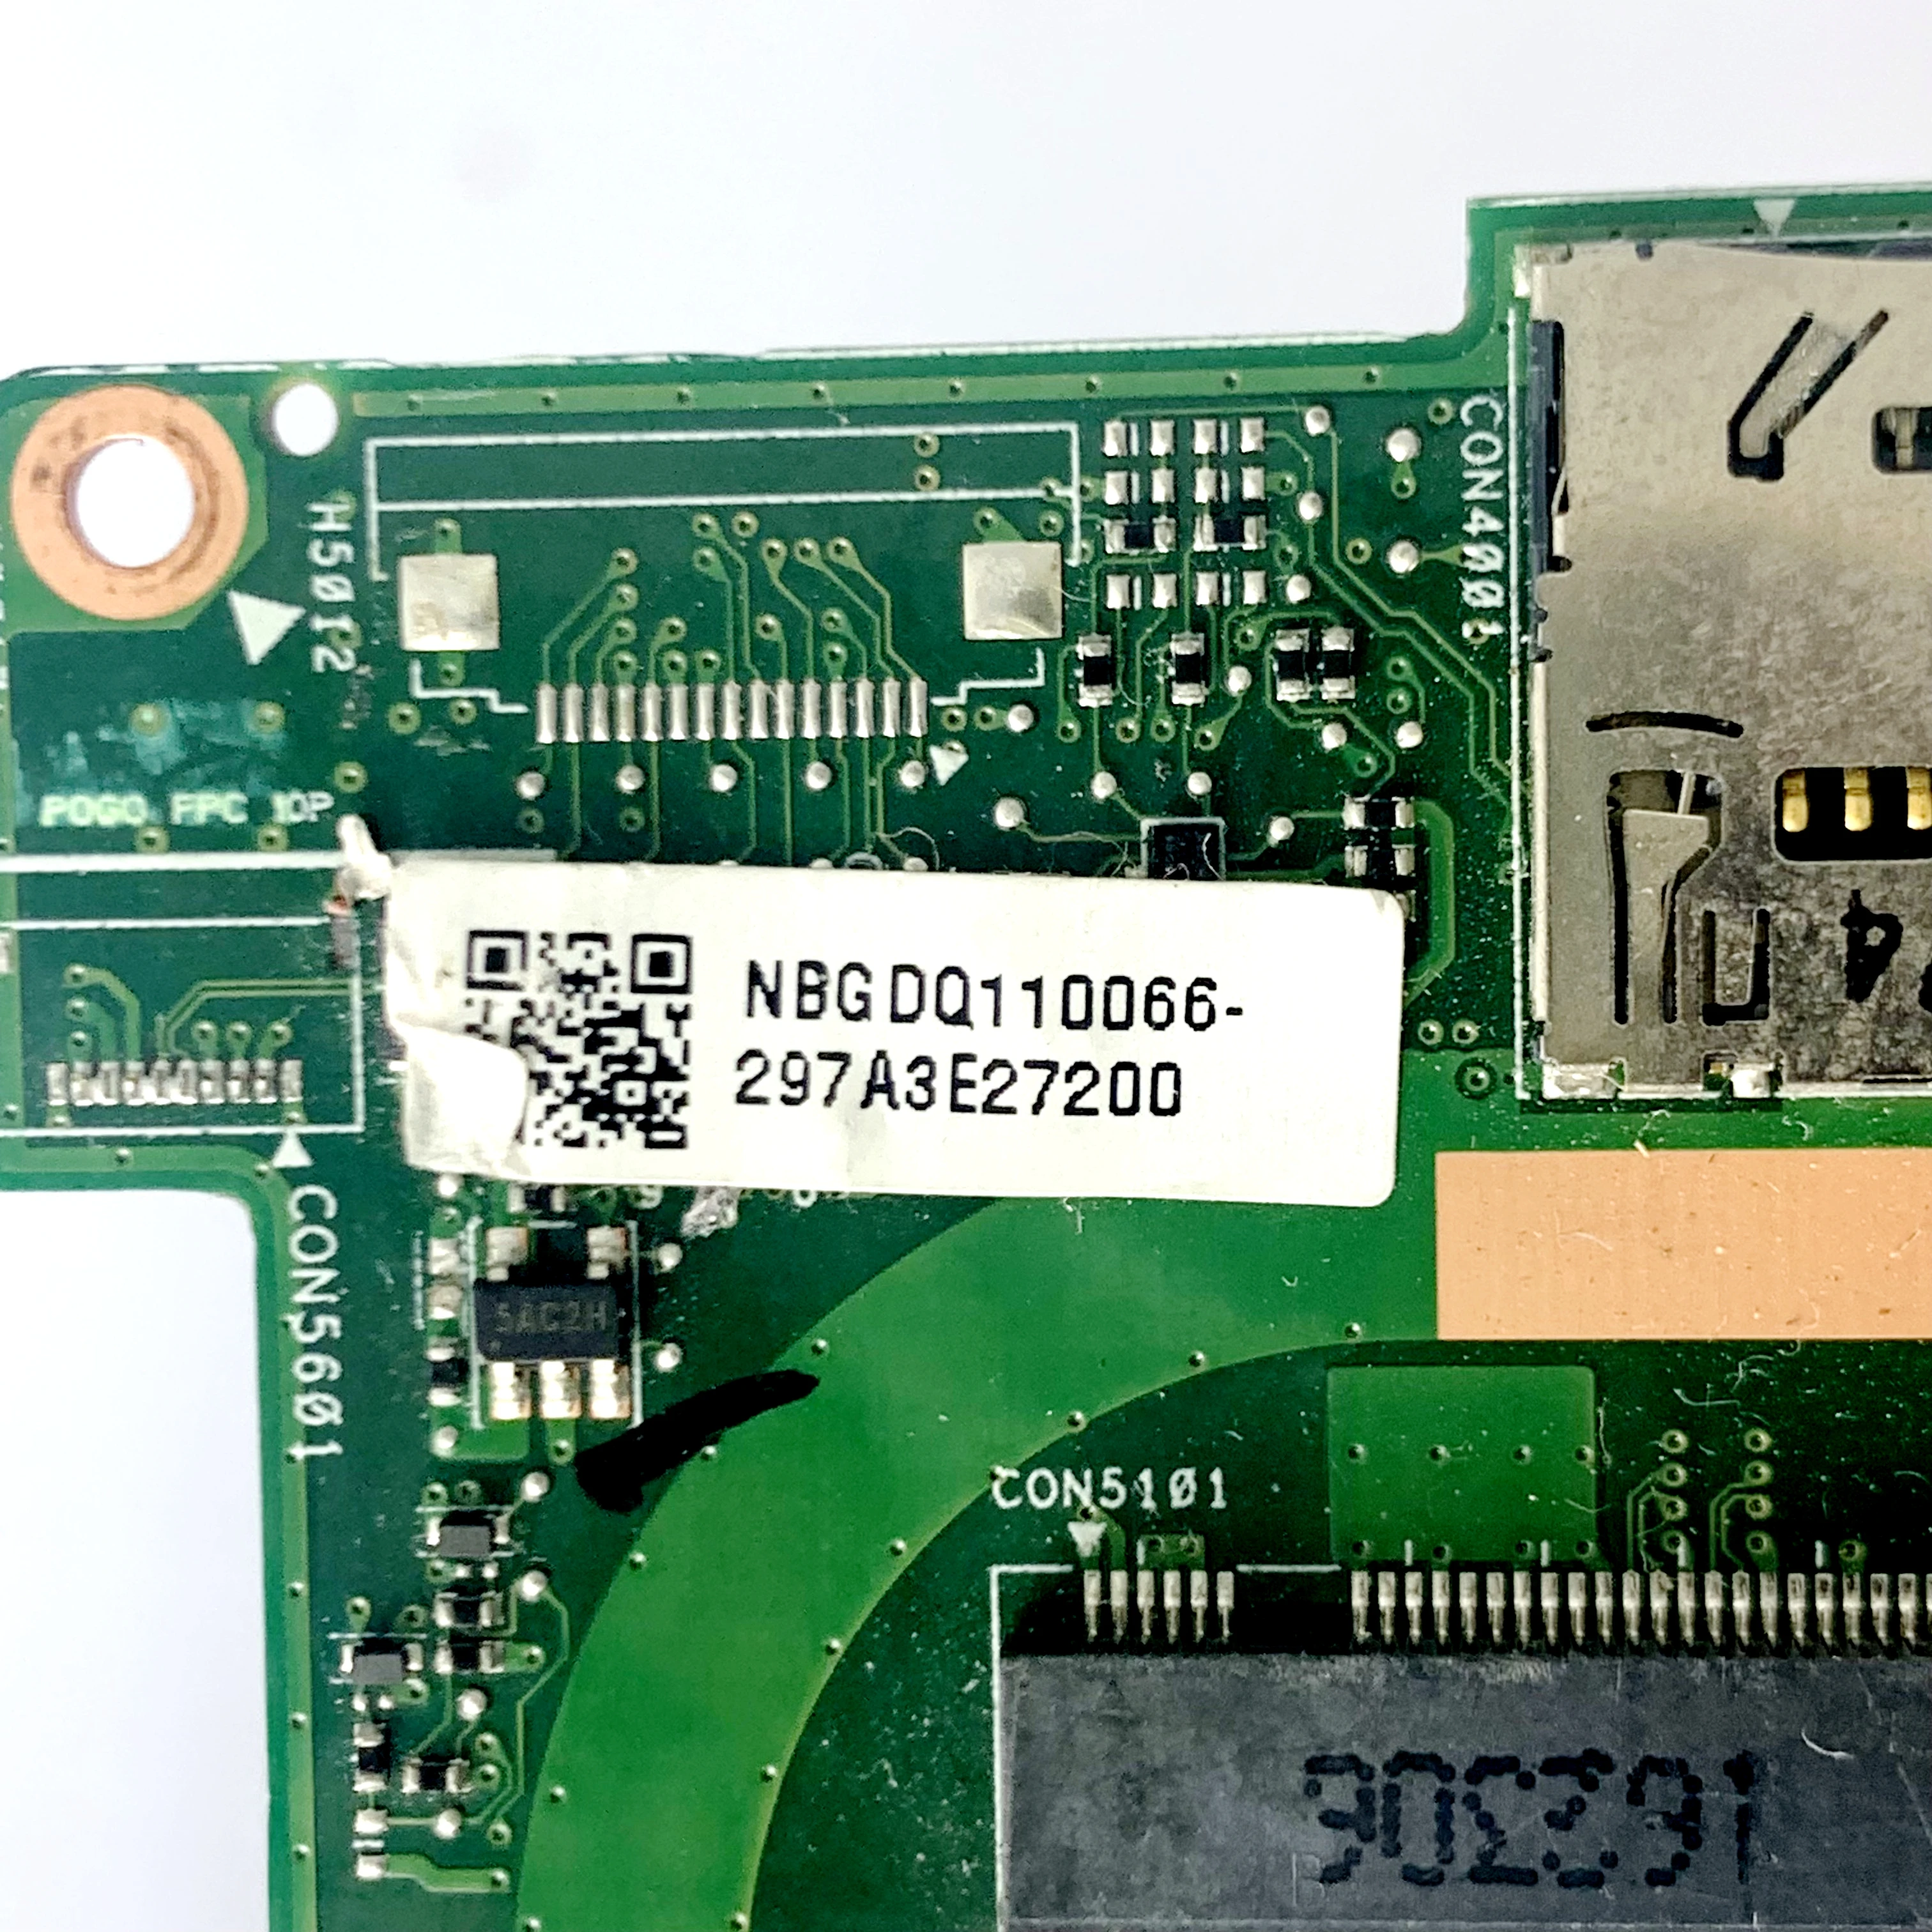 NBGDQ11006 С Материнской платой SR2EZ i7-6500U CPU Для Acer Switch Alpha 12 SA5-271 SA5-271P Материнская Плата Ноутбука 100% Полностью Работает хорошо - 3